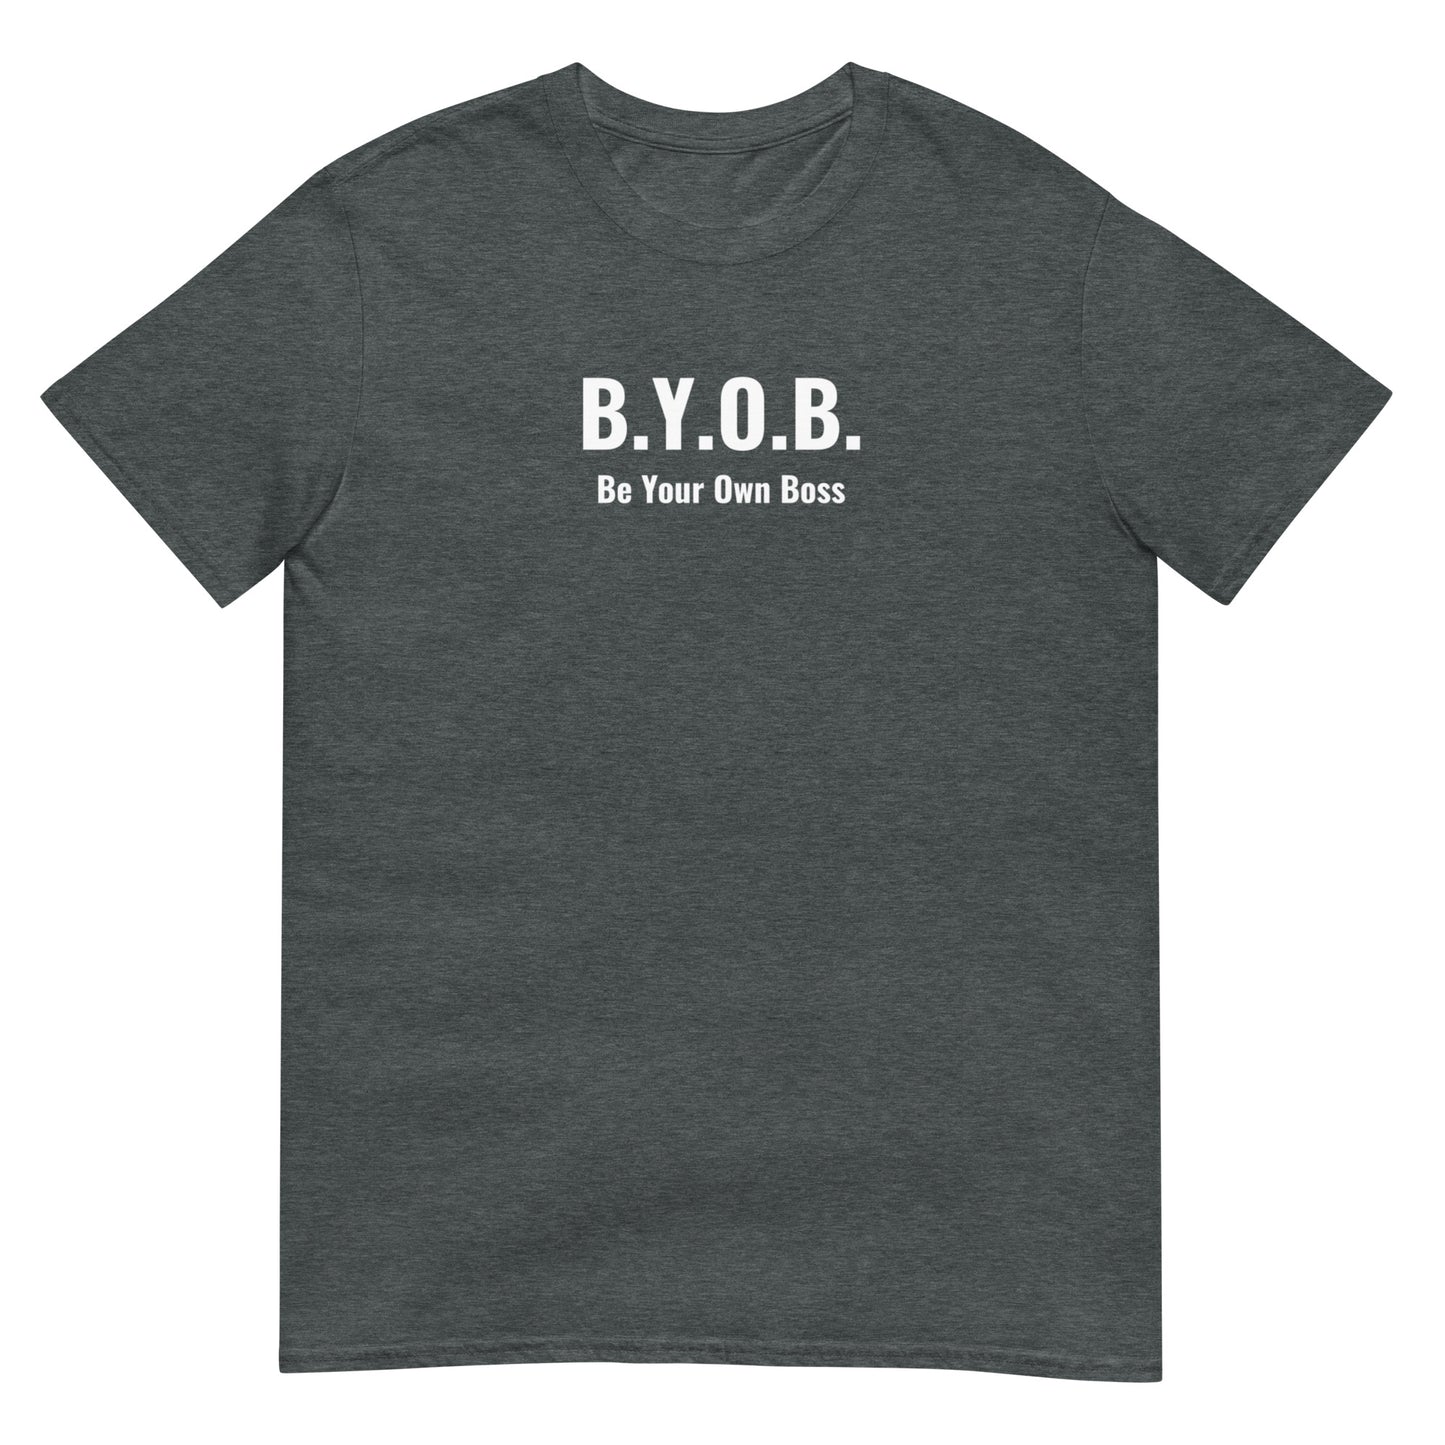 B.Y.O.B. Unisex T-Shirt